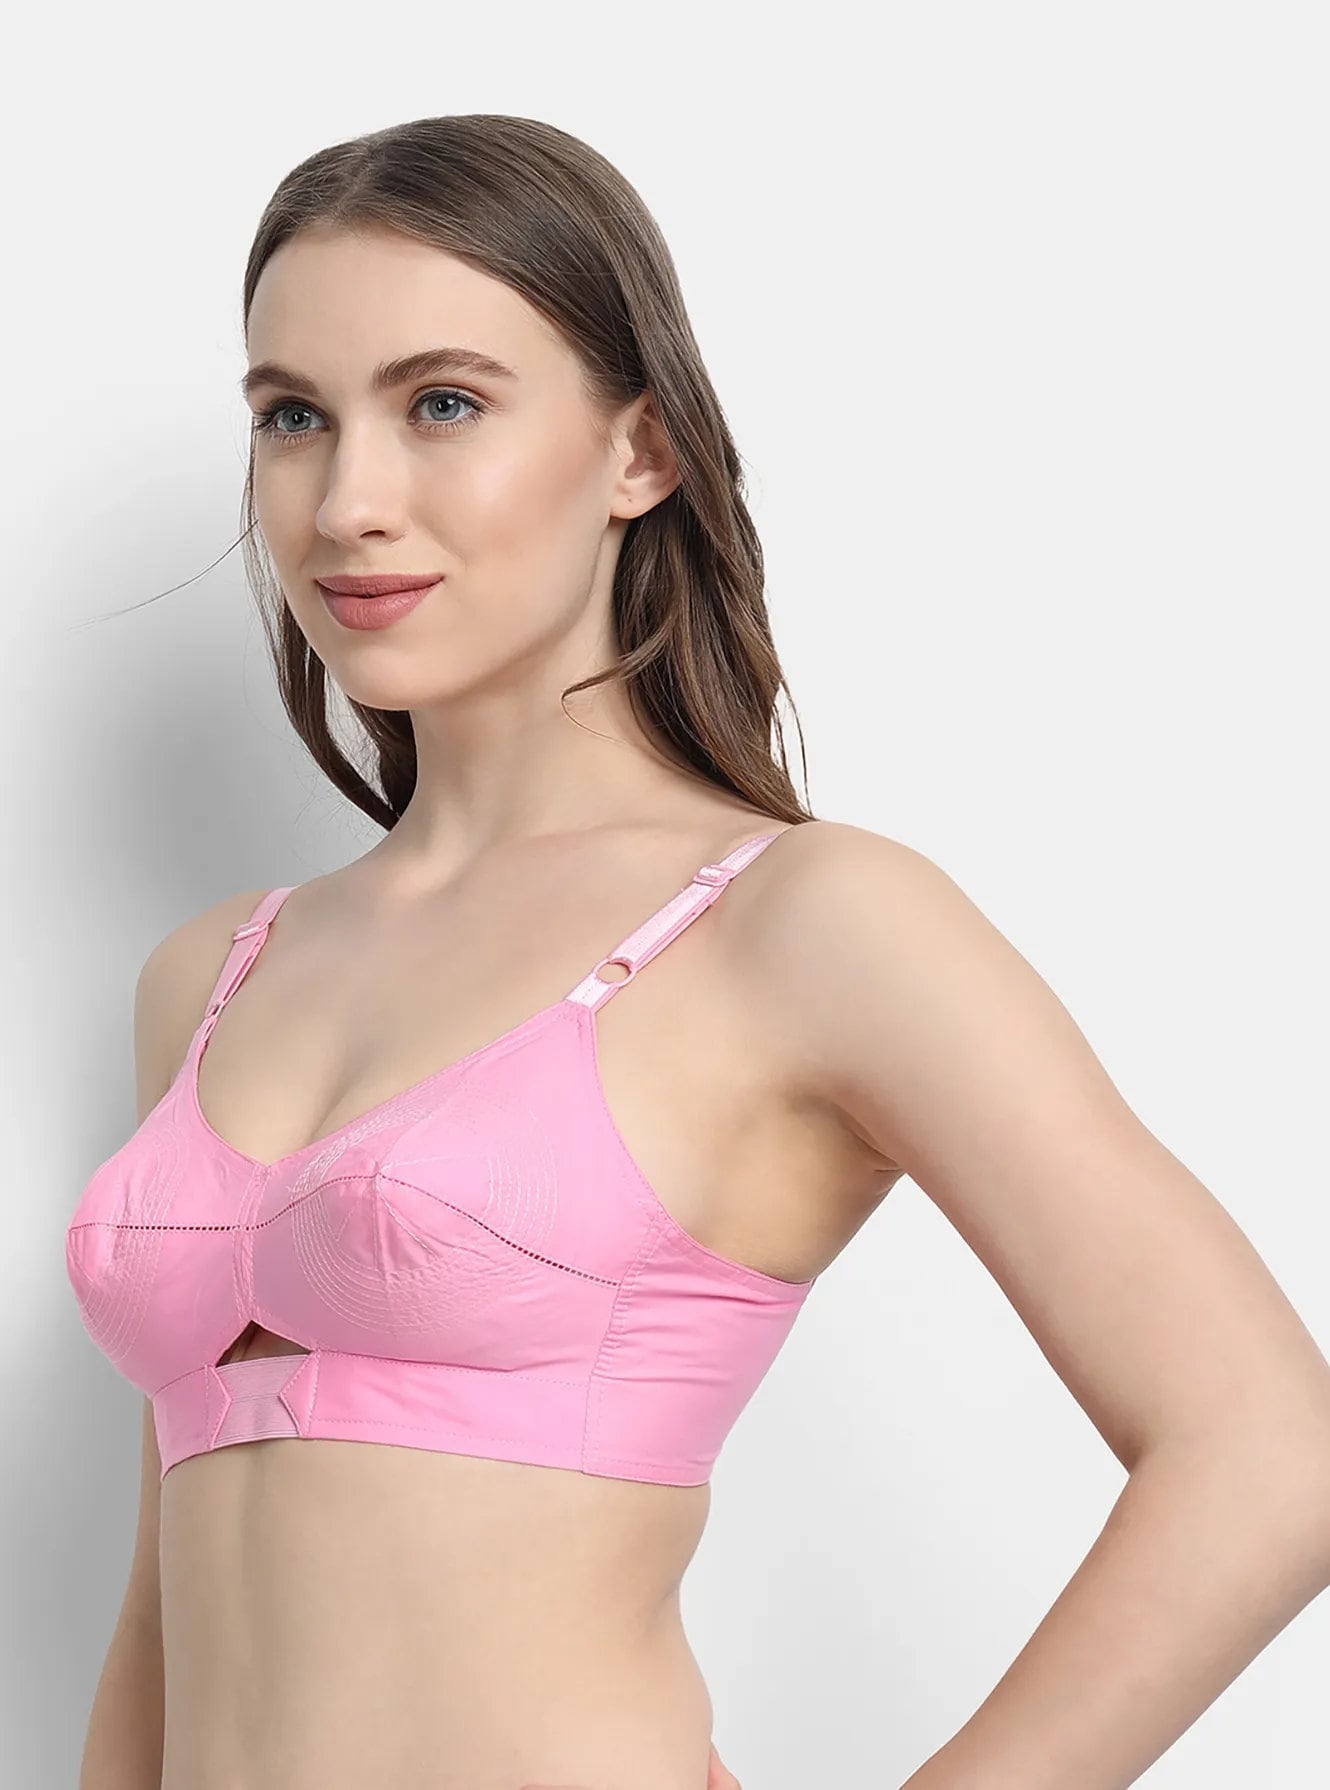 Wholesale round stitch bra For Supportive Underwear 